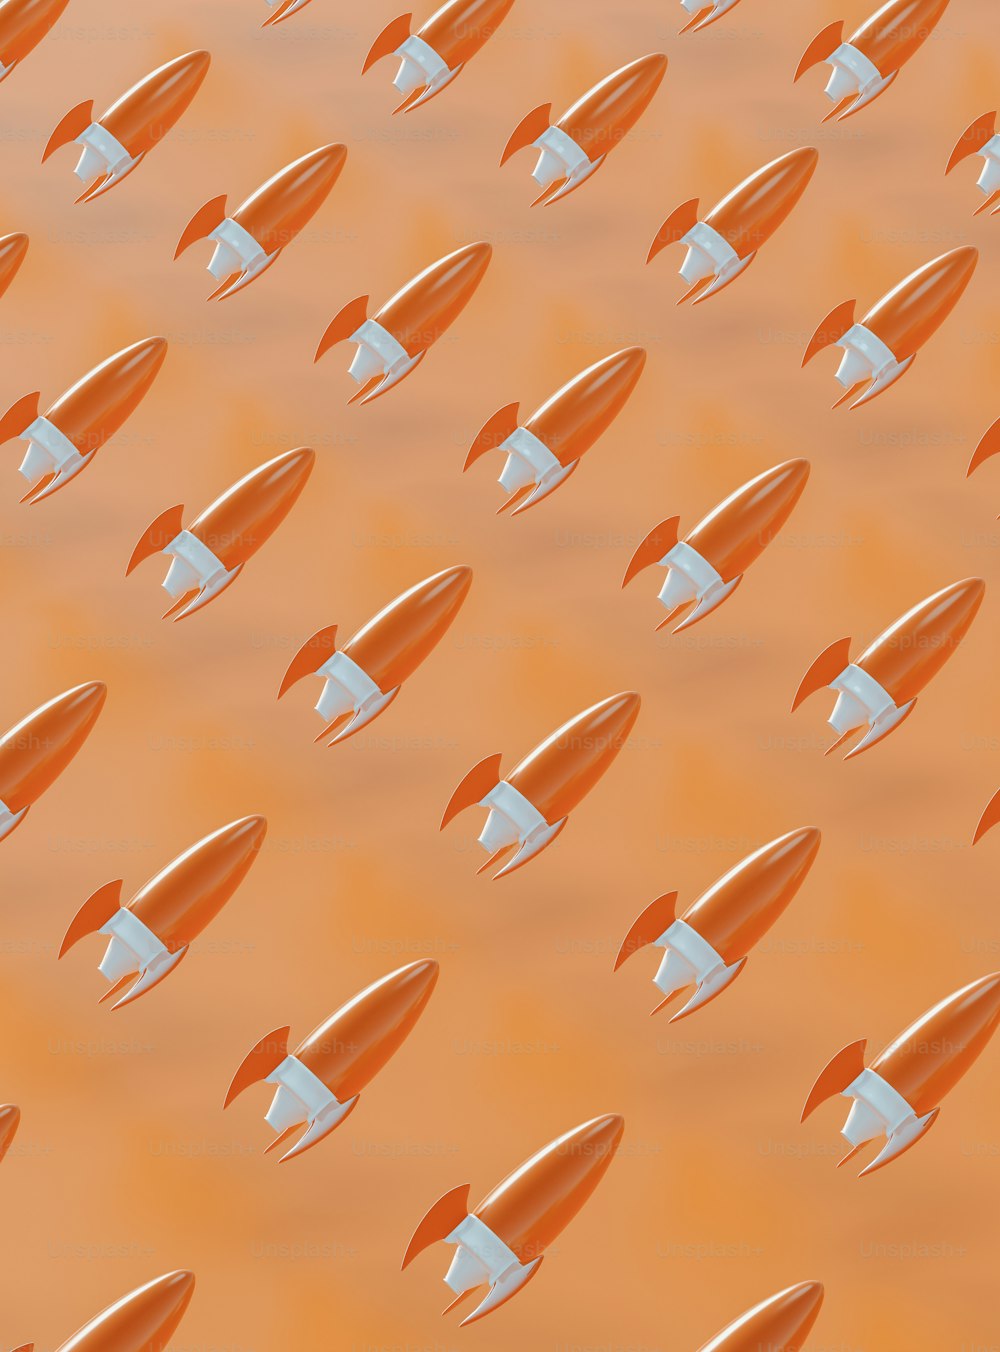 Un groupe de fusées orange et blanches volant dans les airs